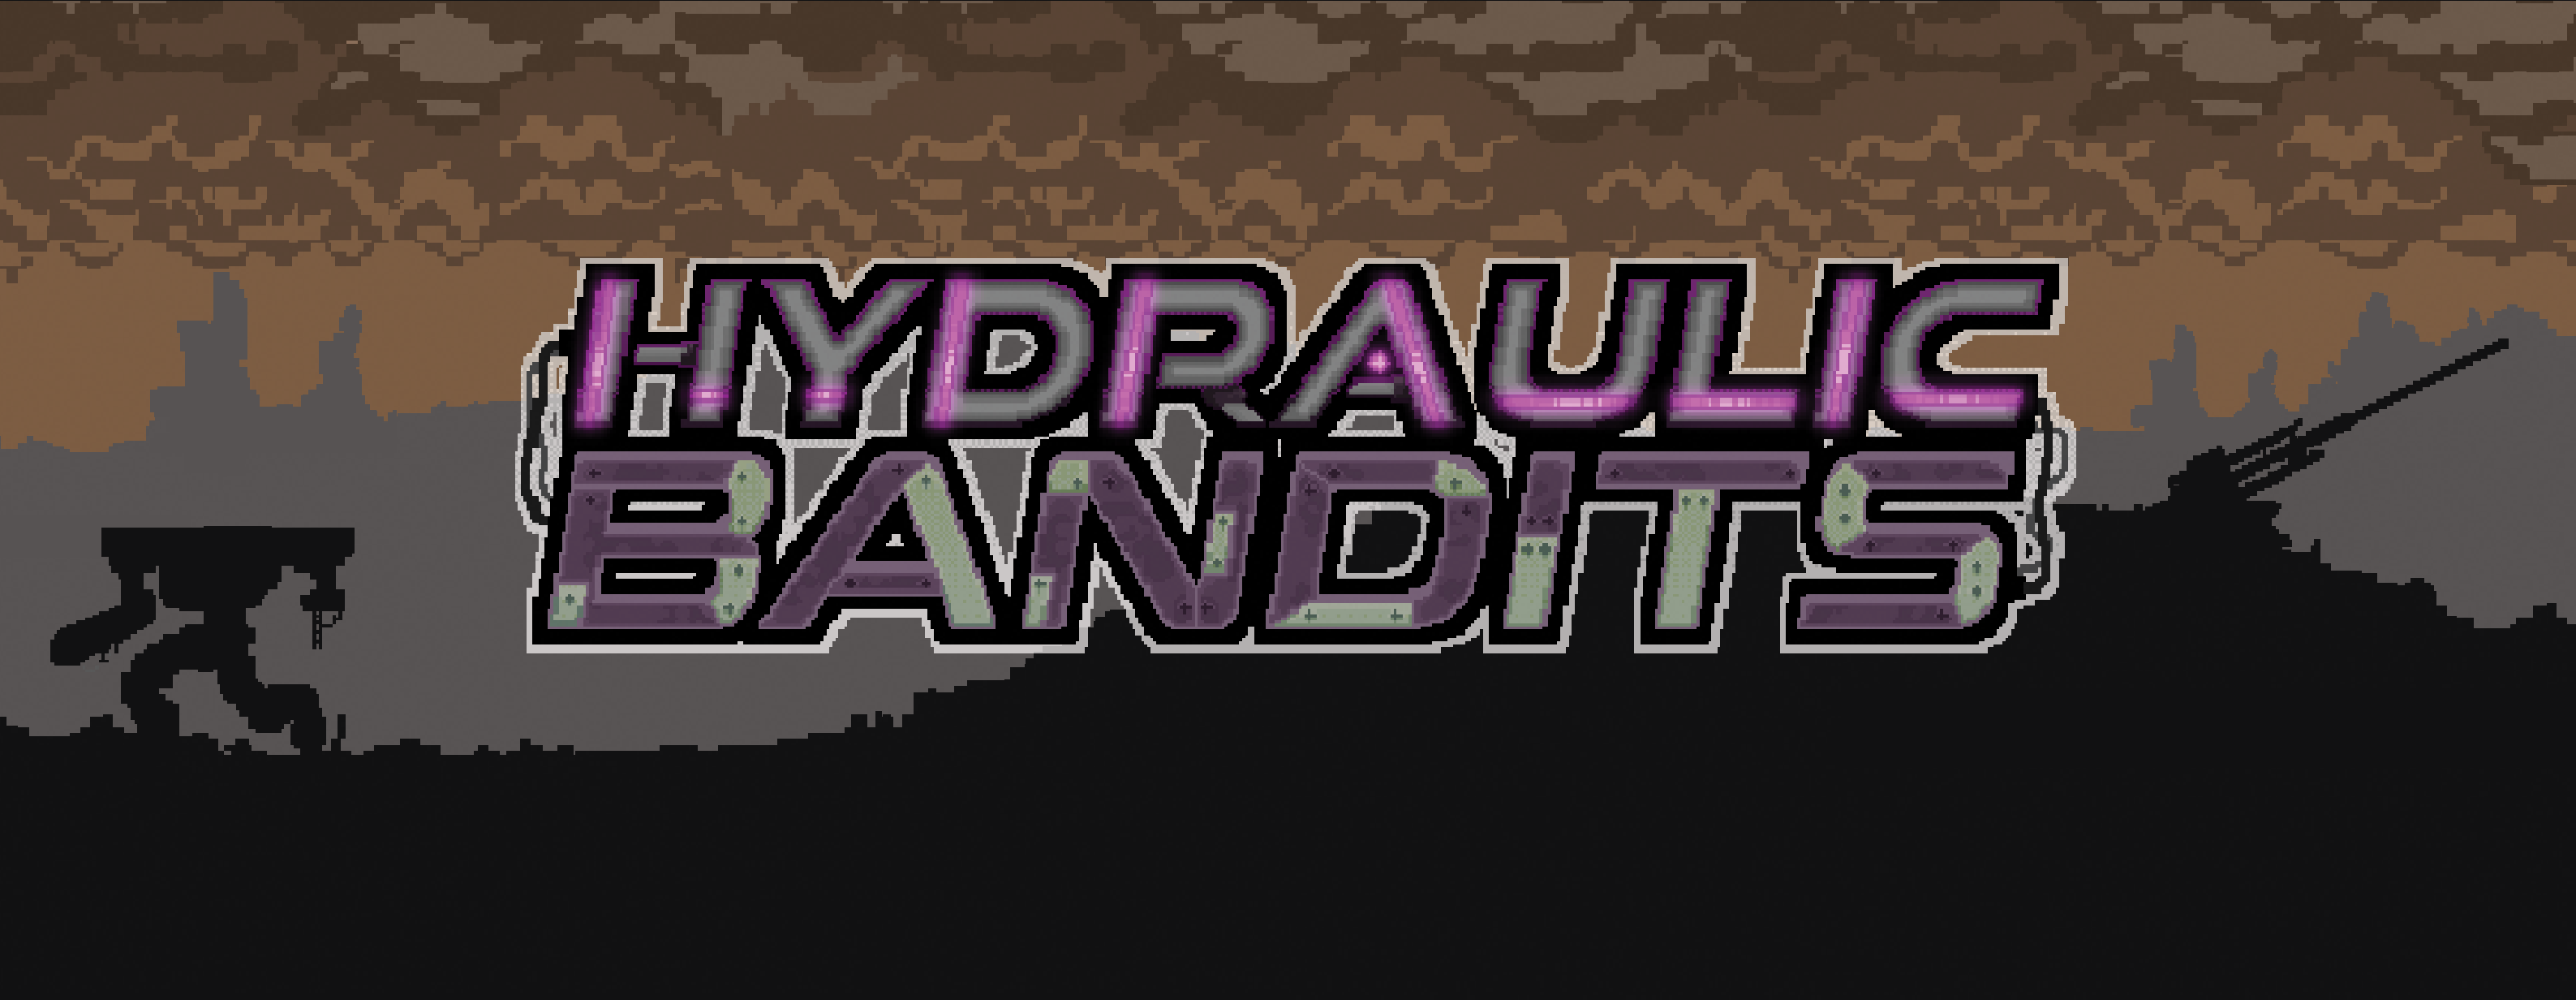 Hydraulic Bandits